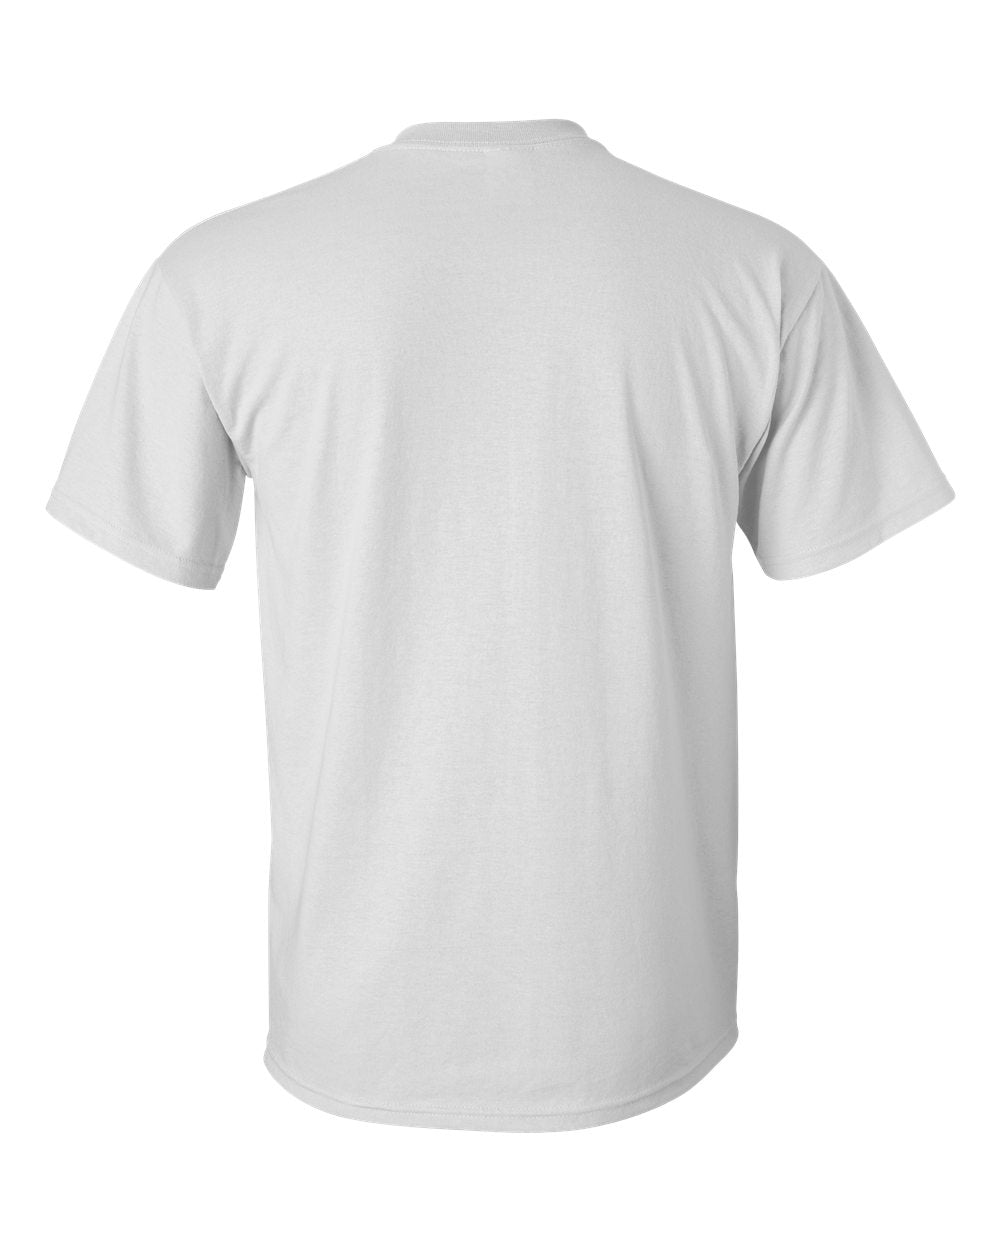 Gildan - Ultra Cotton® Tall T-Shirt - 2000T SKU#06660